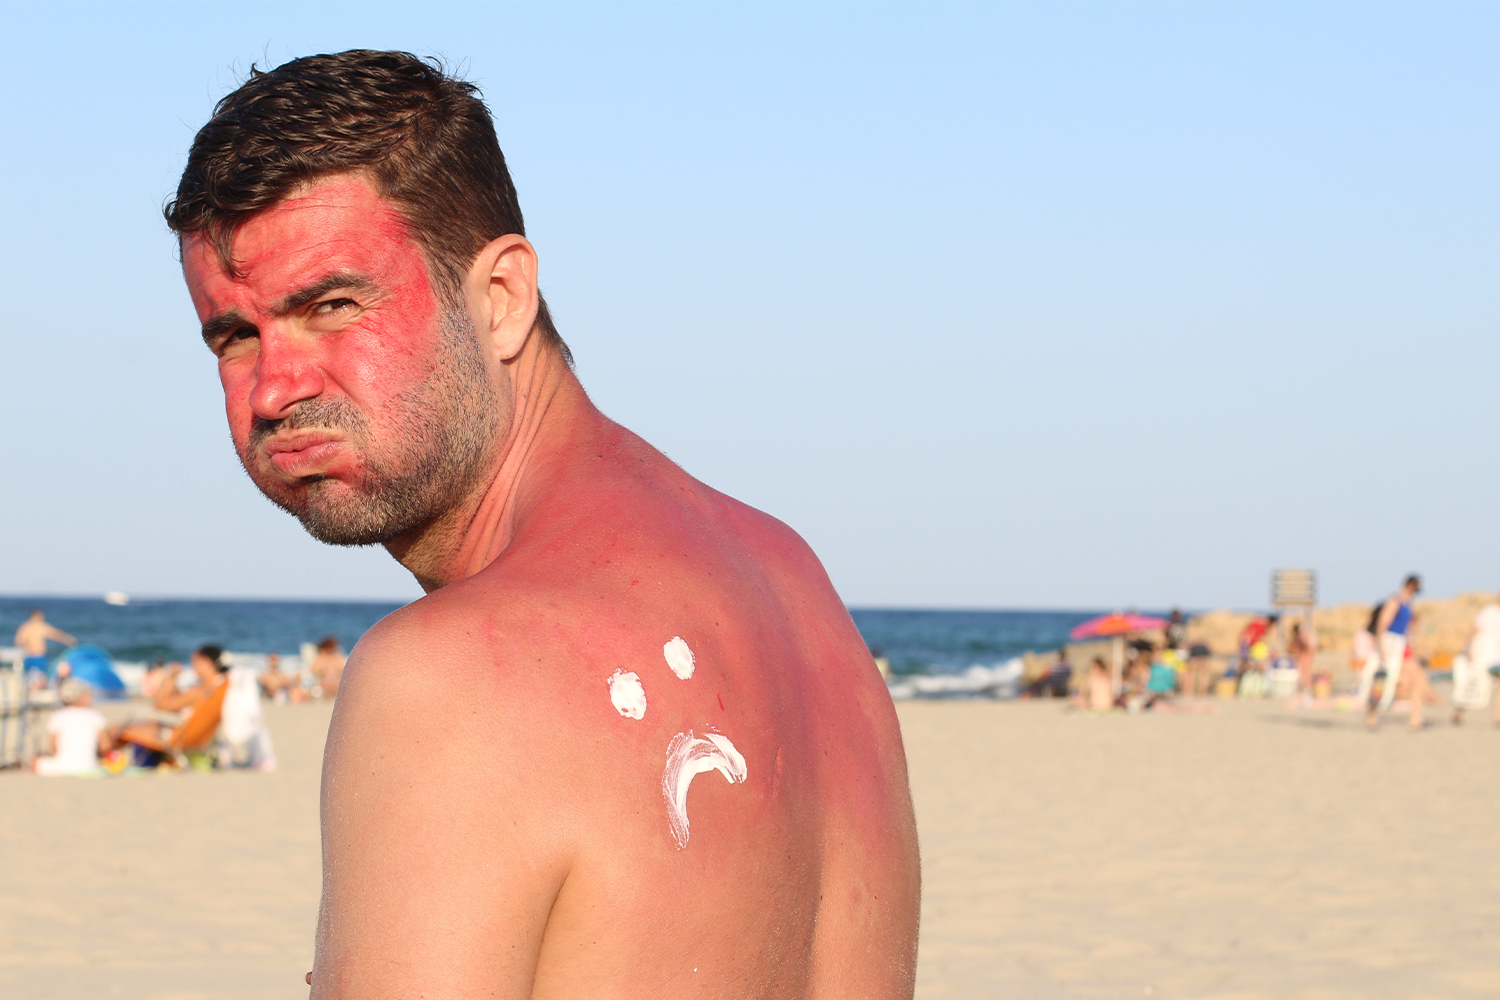 How Long Does Sunburn Last?